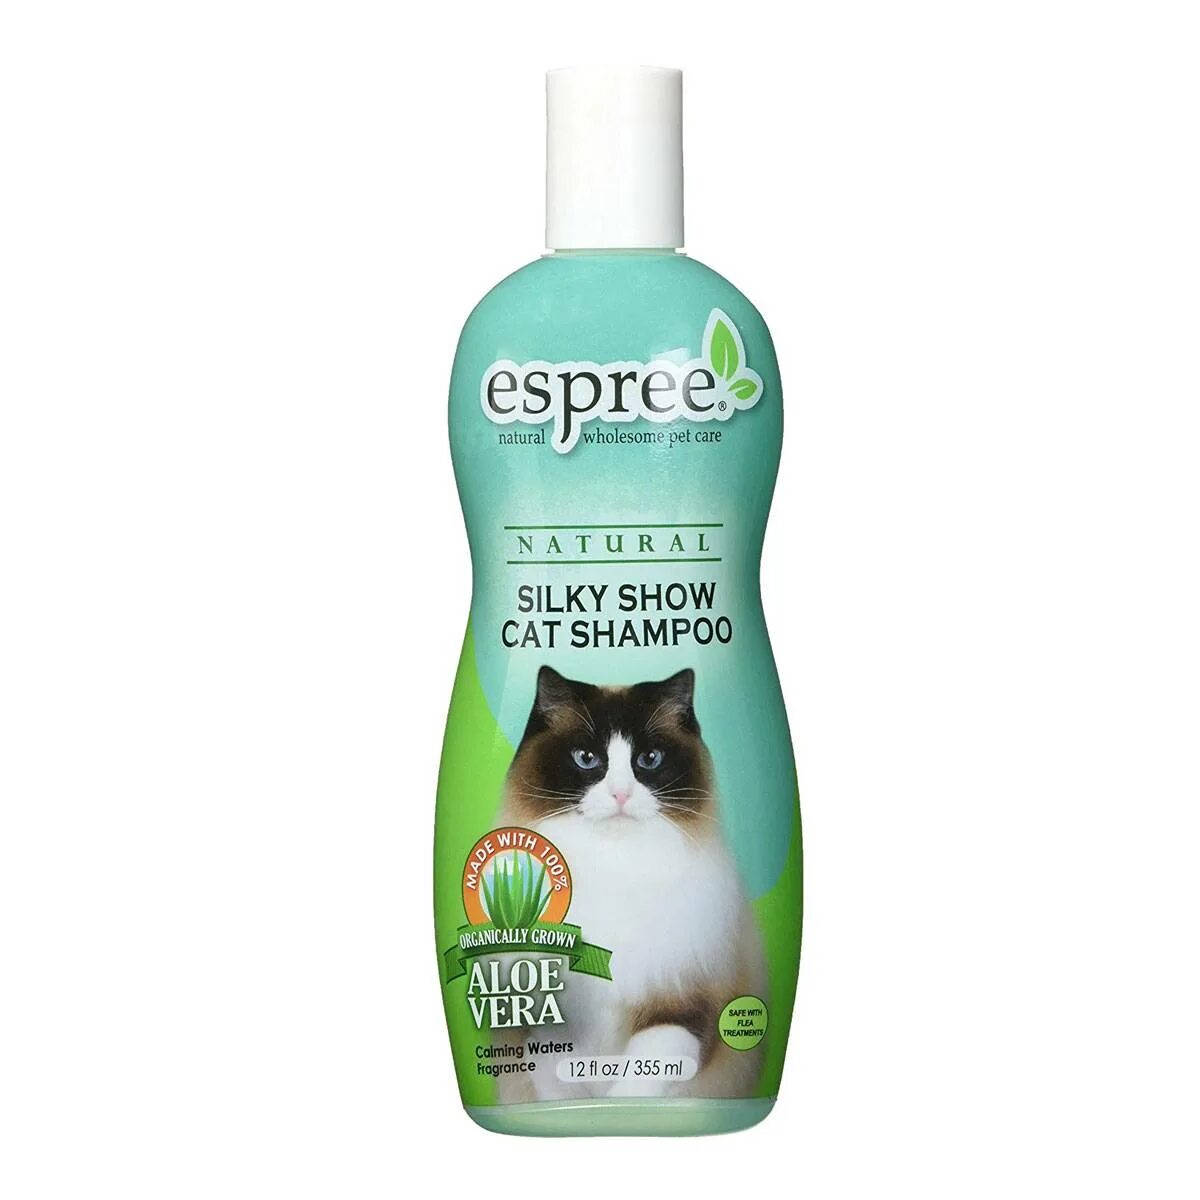 Шампунь от аллергии для людей. Шампунь Espree для кошек. Espree Silky show Shampoo. Шампунь для кошек гипоаллергенный. Шампунь против аллергии для кошек.